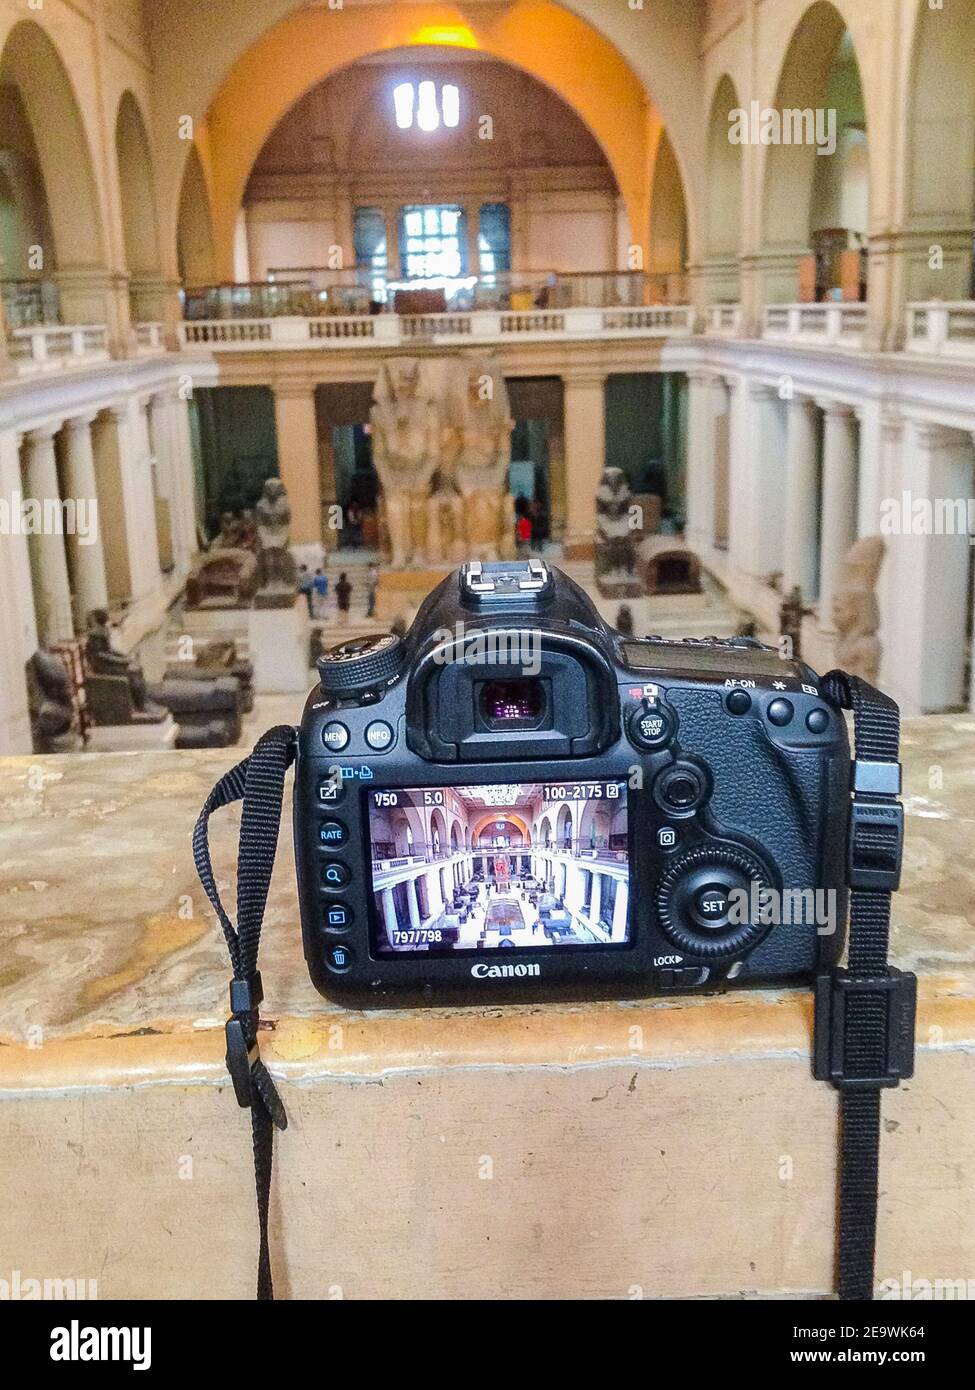 Egitto, fine del divieto di fotografia all'interno del Museo Egizio del Cairo. Foto dell'atrio del museo e di una macchina fotografica. Mostra lo stesso atrio. Foto Stock